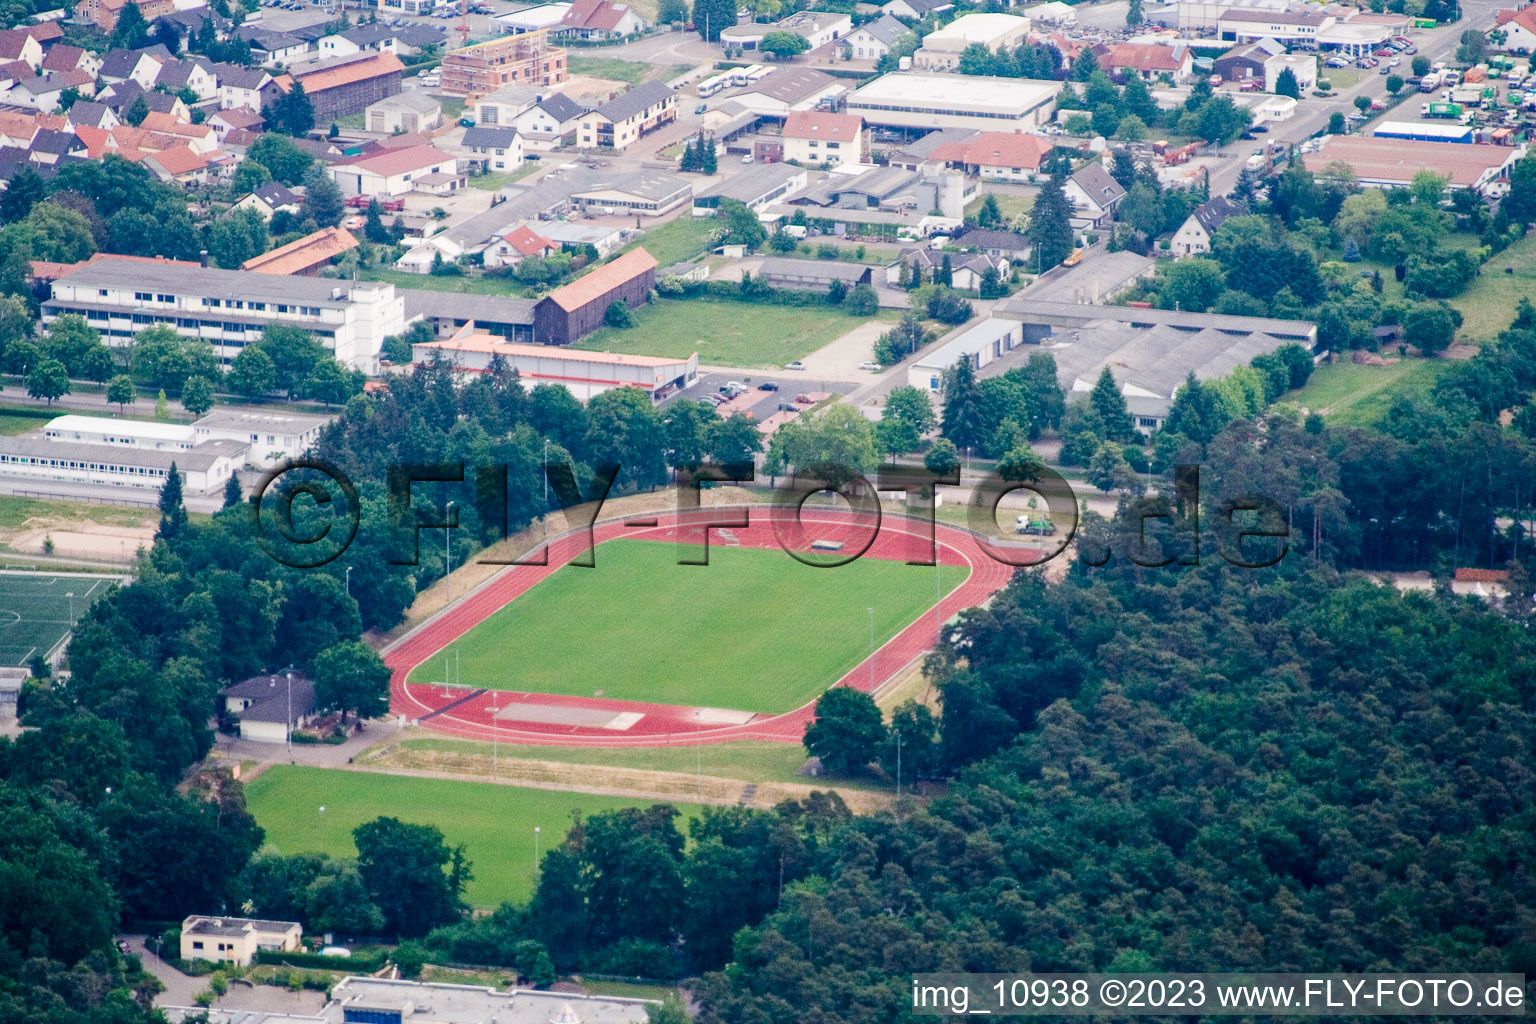 Vue aérienne de Stade de football à Rülzheim dans le département Rhénanie-Palatinat, Allemagne